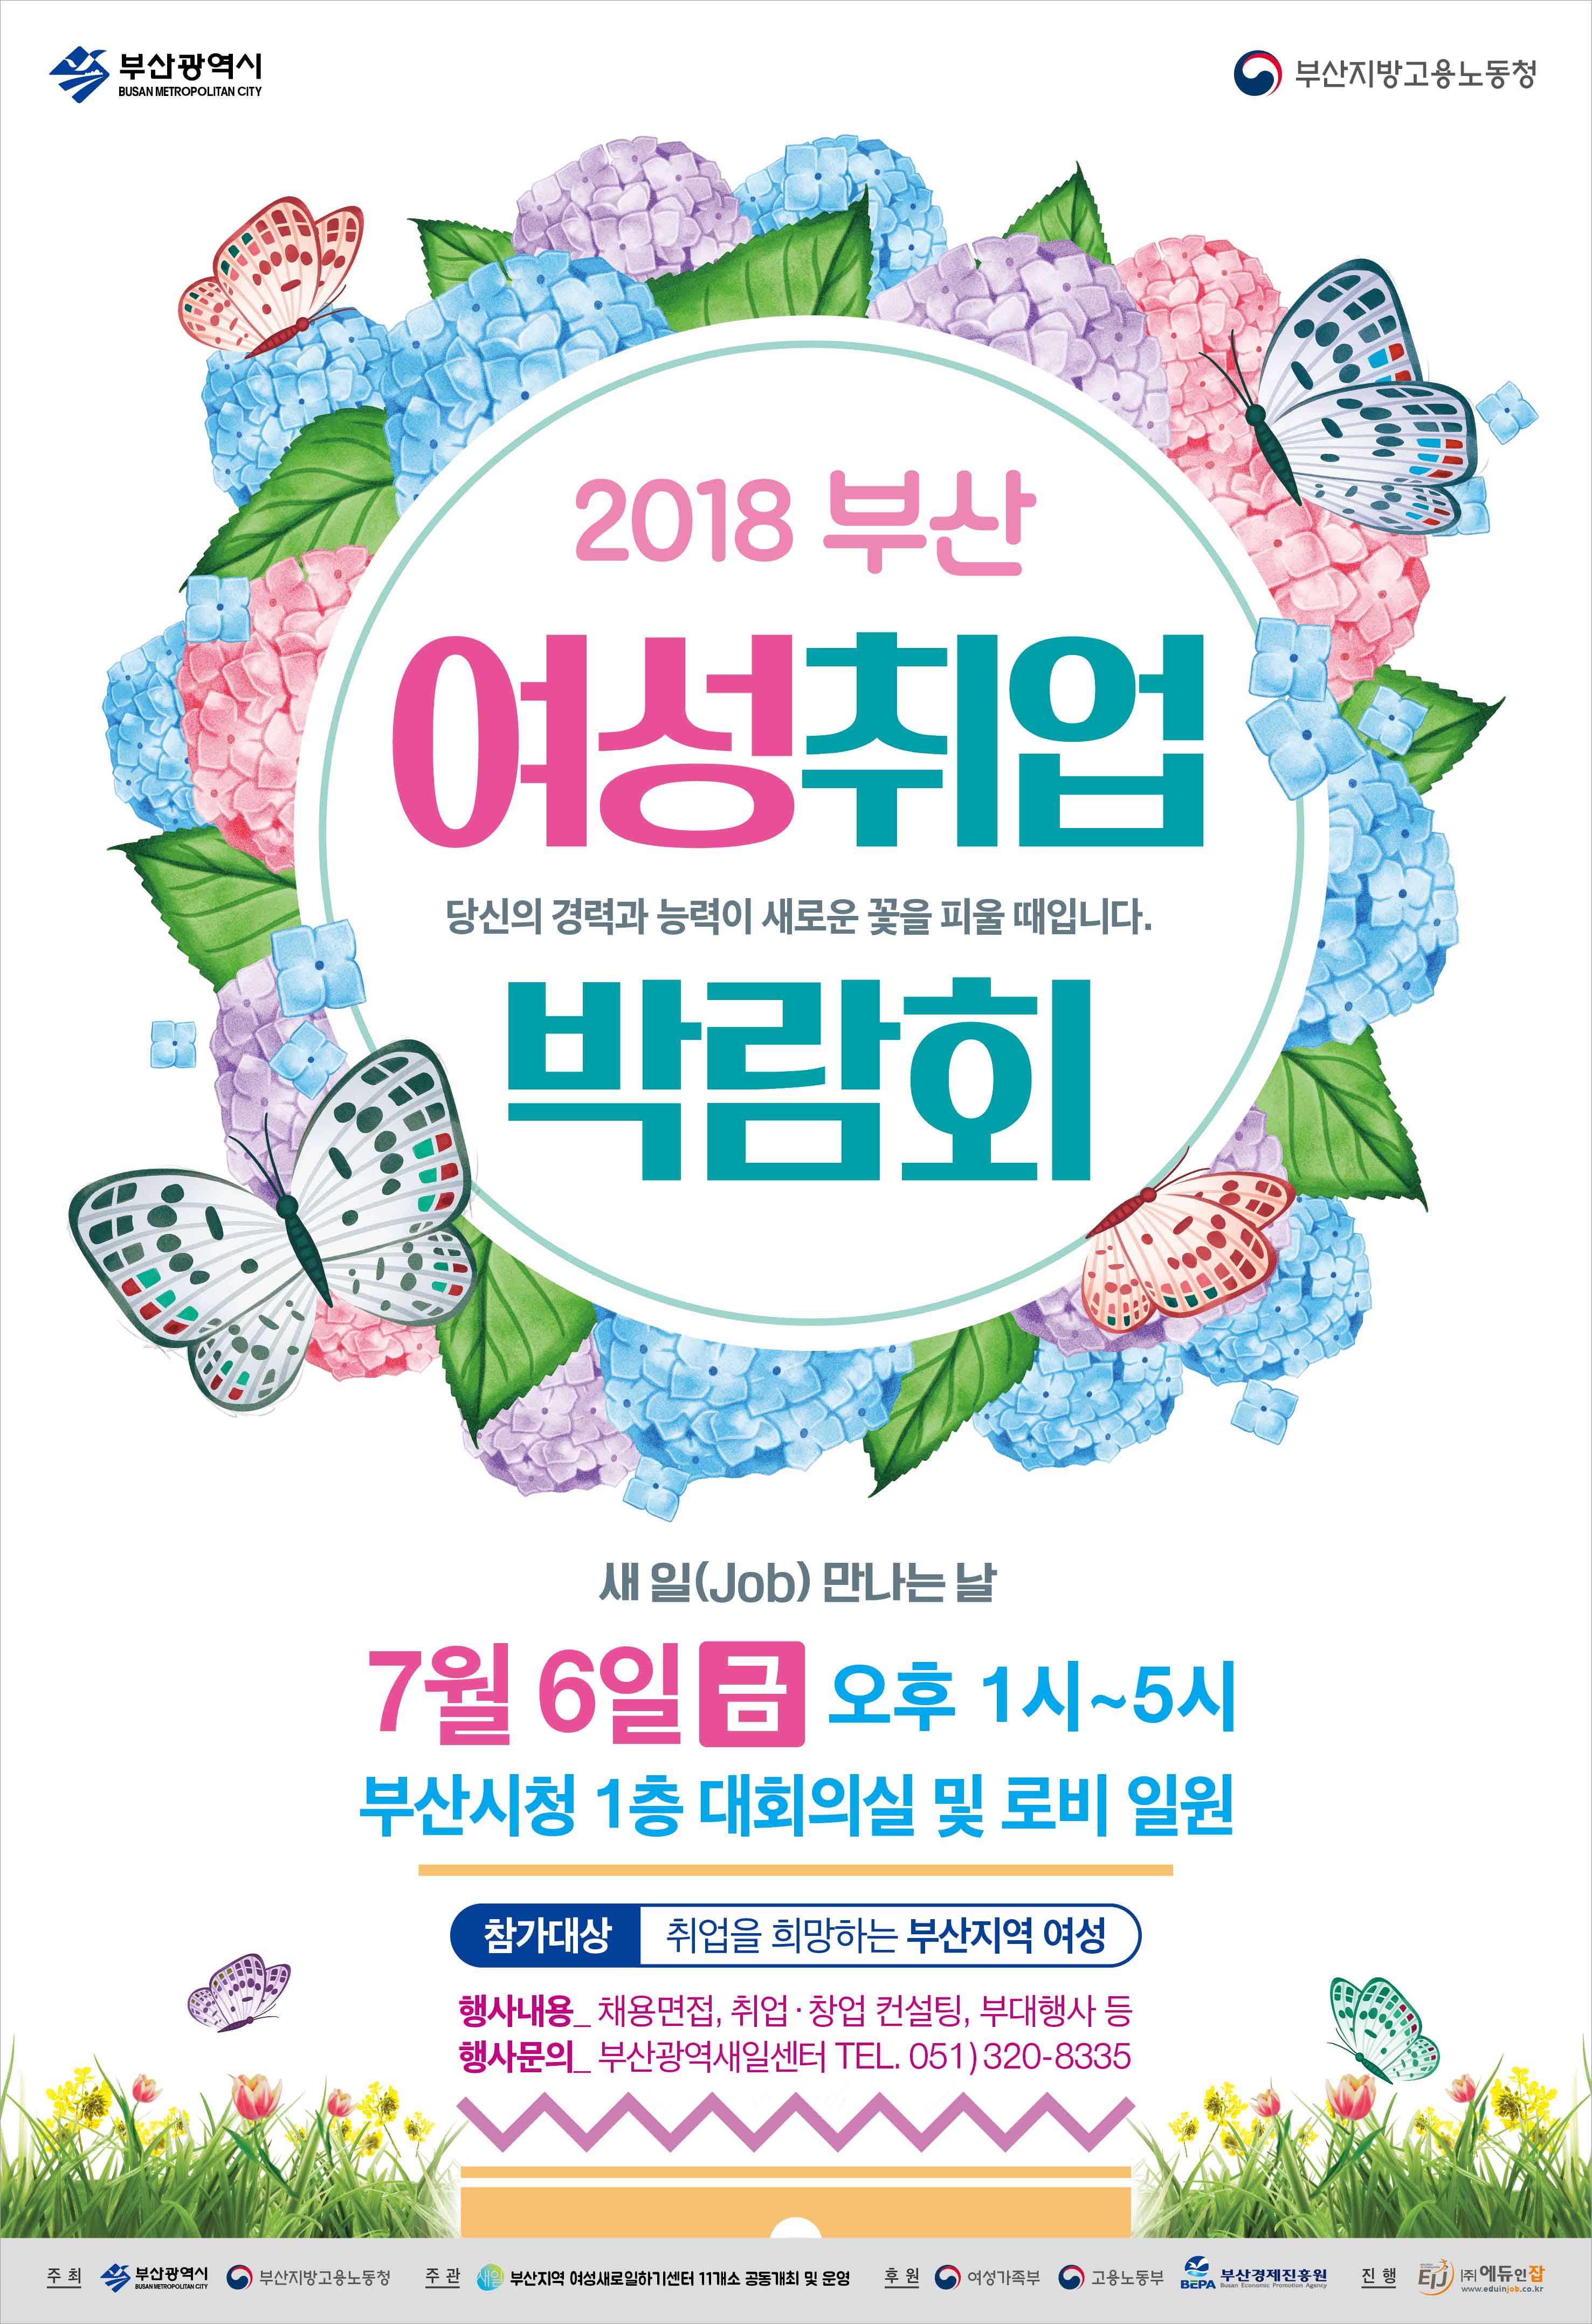 2018 부산 여성 취업박람회 개최 안내0